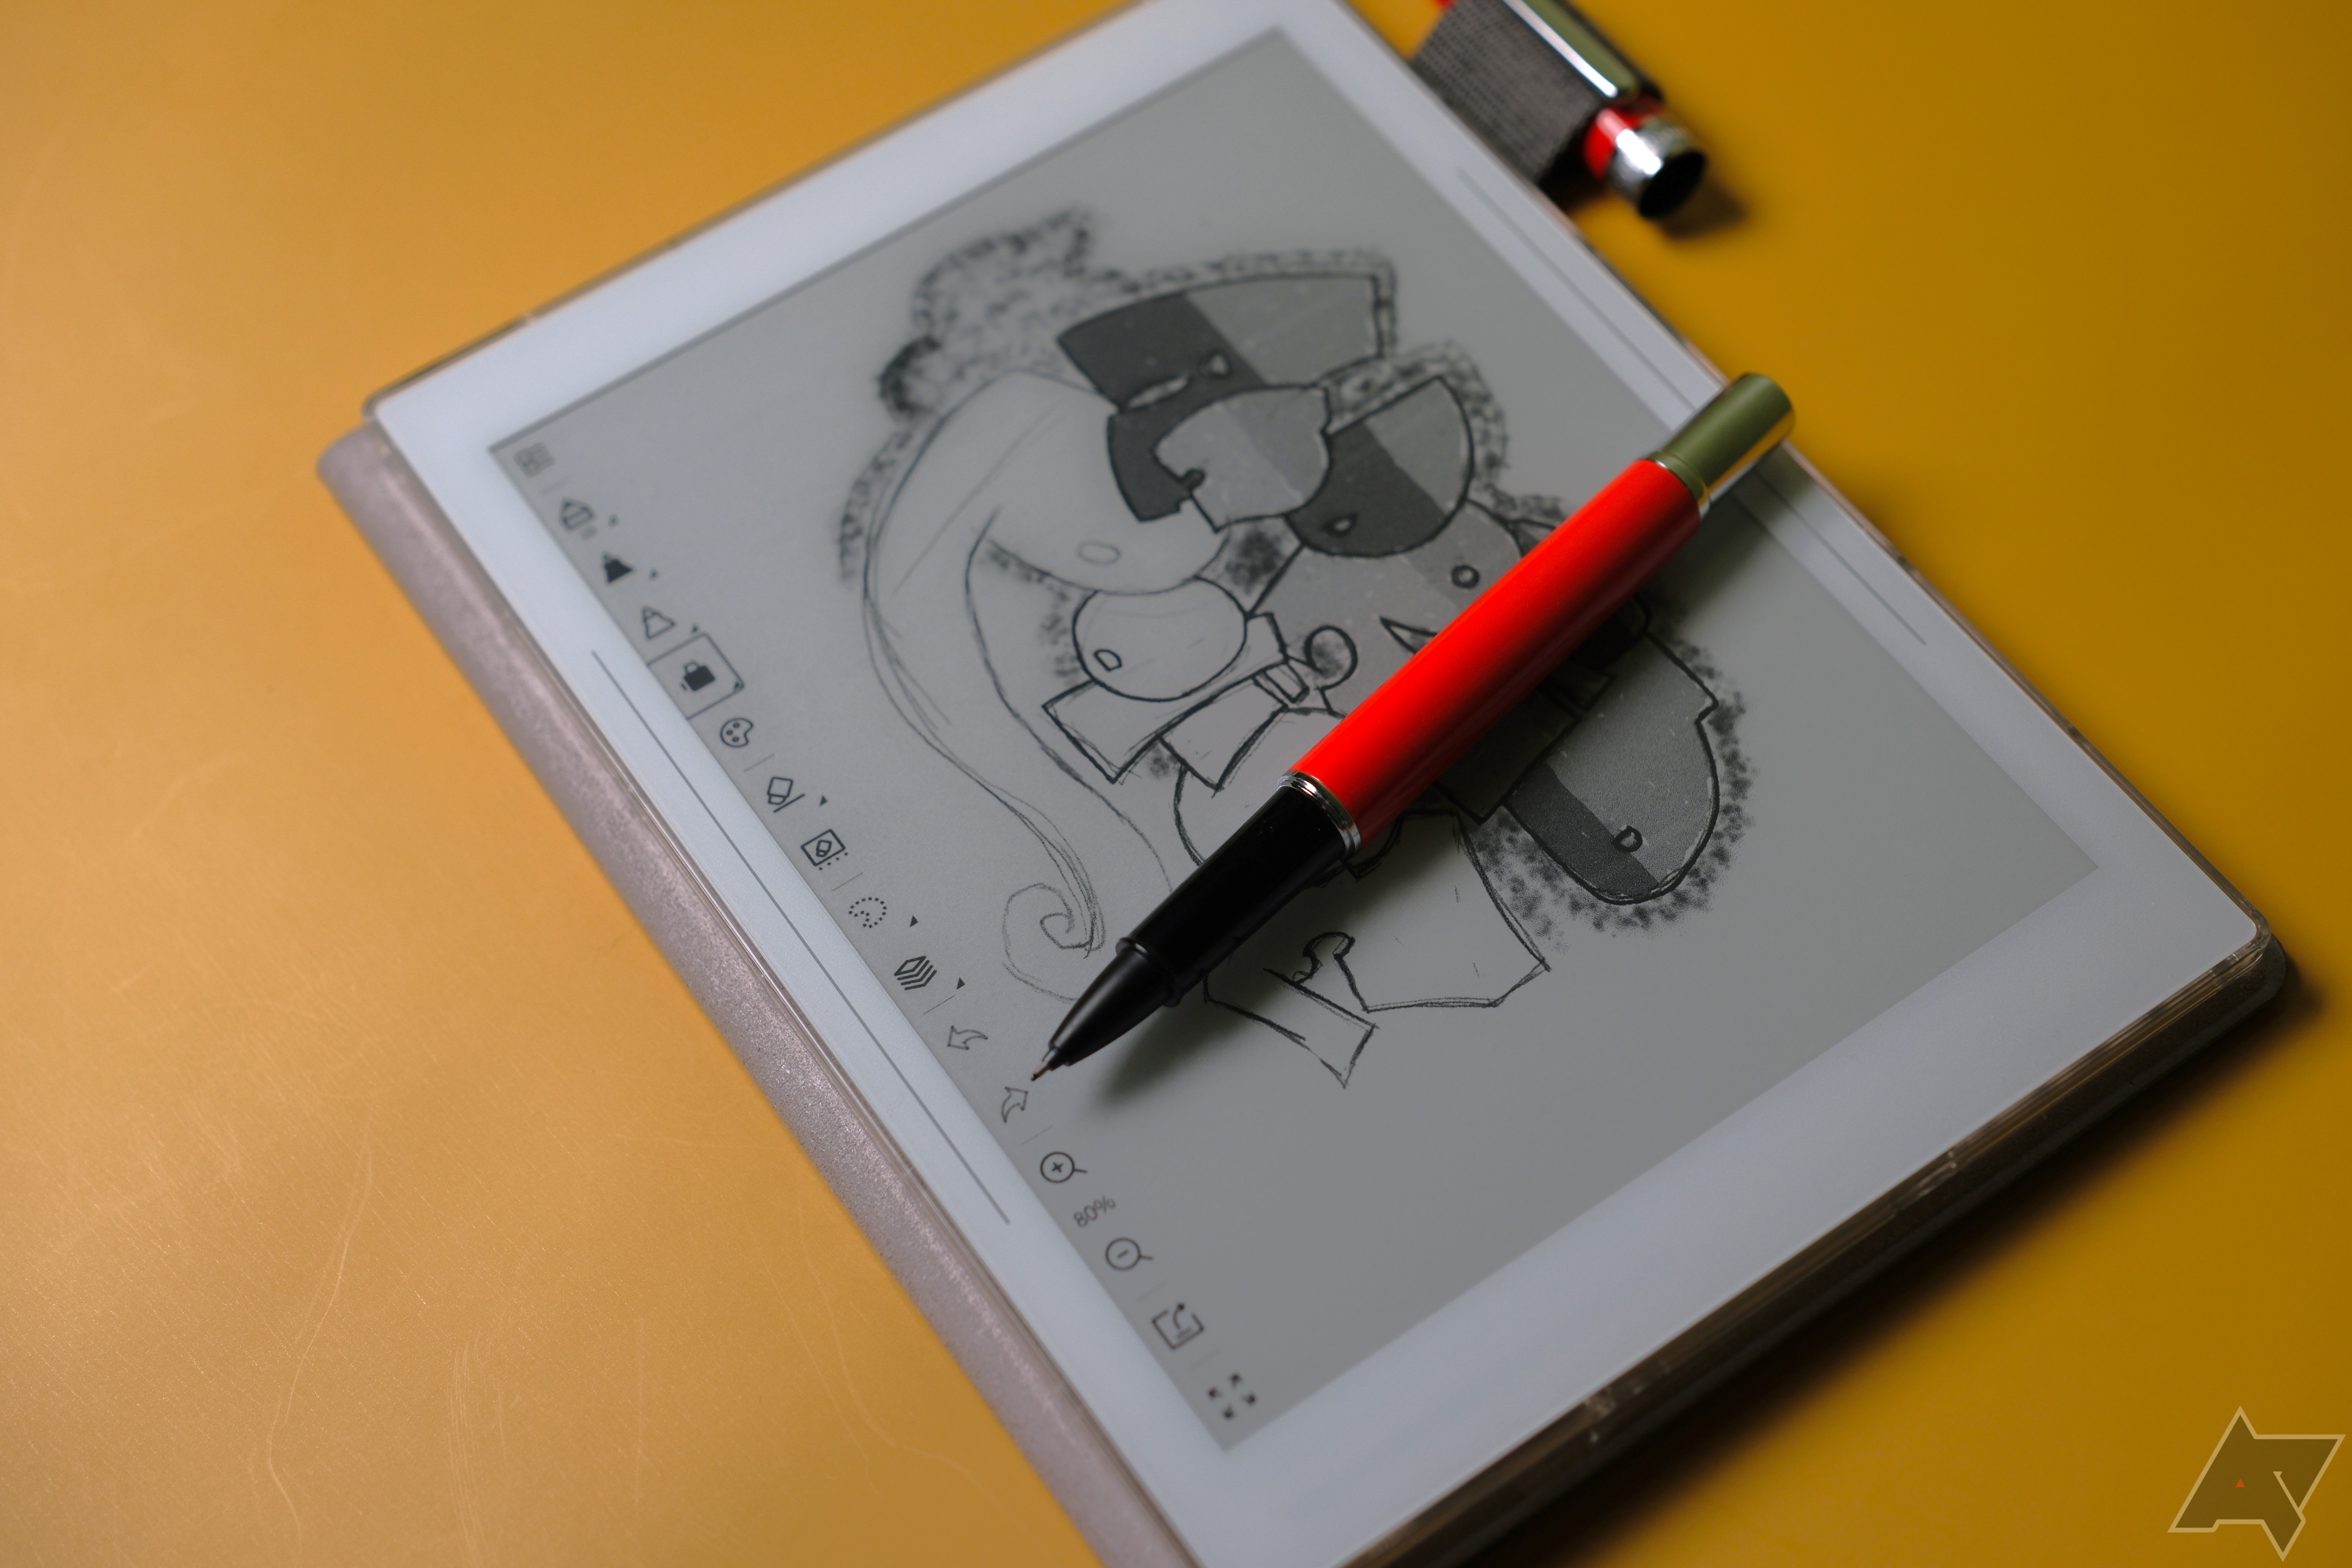 Supernote Nomad mostrando desenho na tela com caneta na parte superior